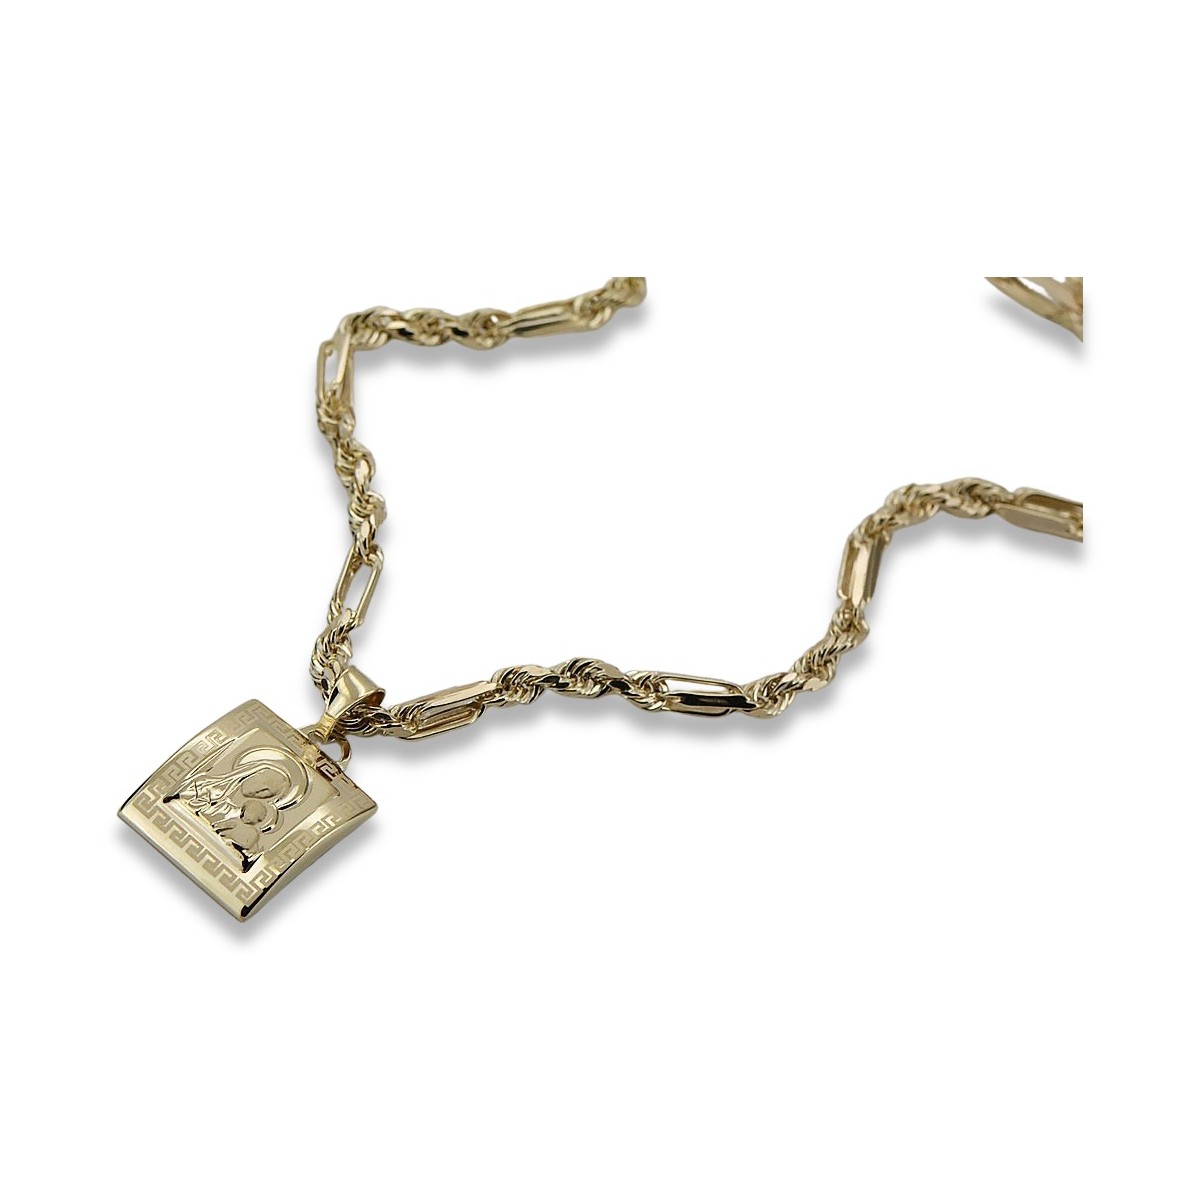 Złoty medalik Bozia 14k 585 z łańcuszkiem Corda Figaro pm001y&cc004y45